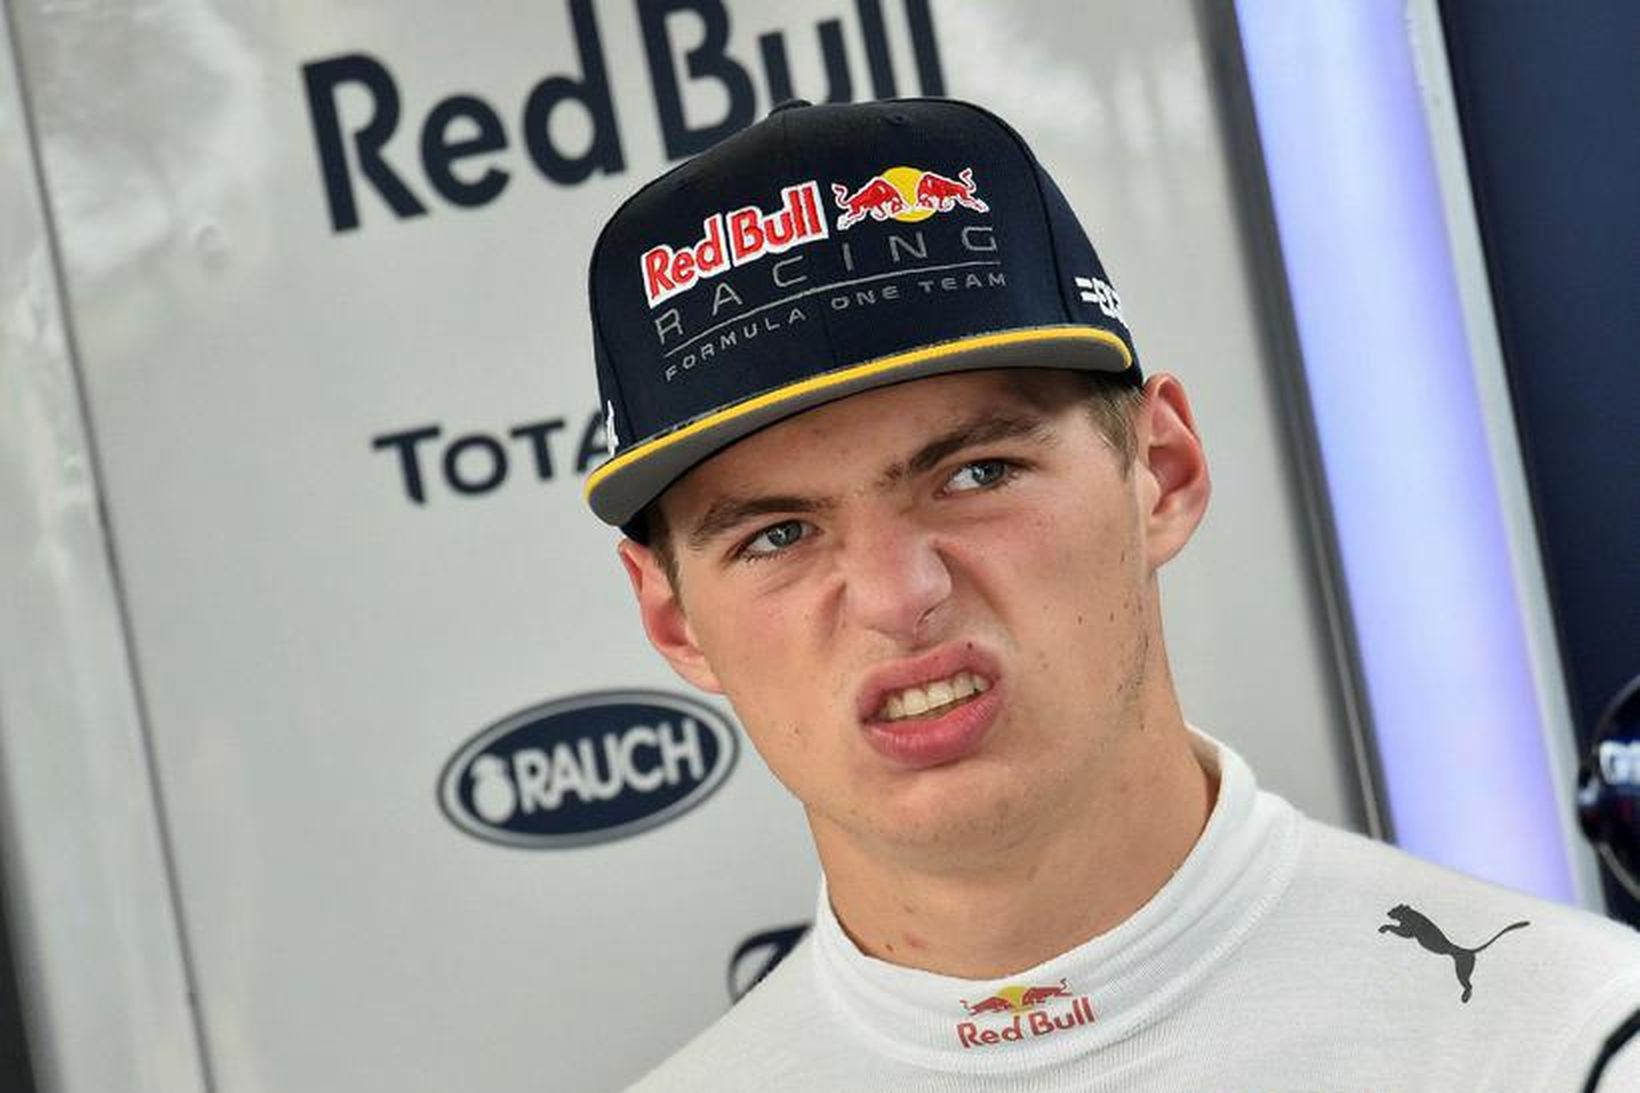 Max Verstappen óhress með eitthvað í bílskúr Red Bull á …